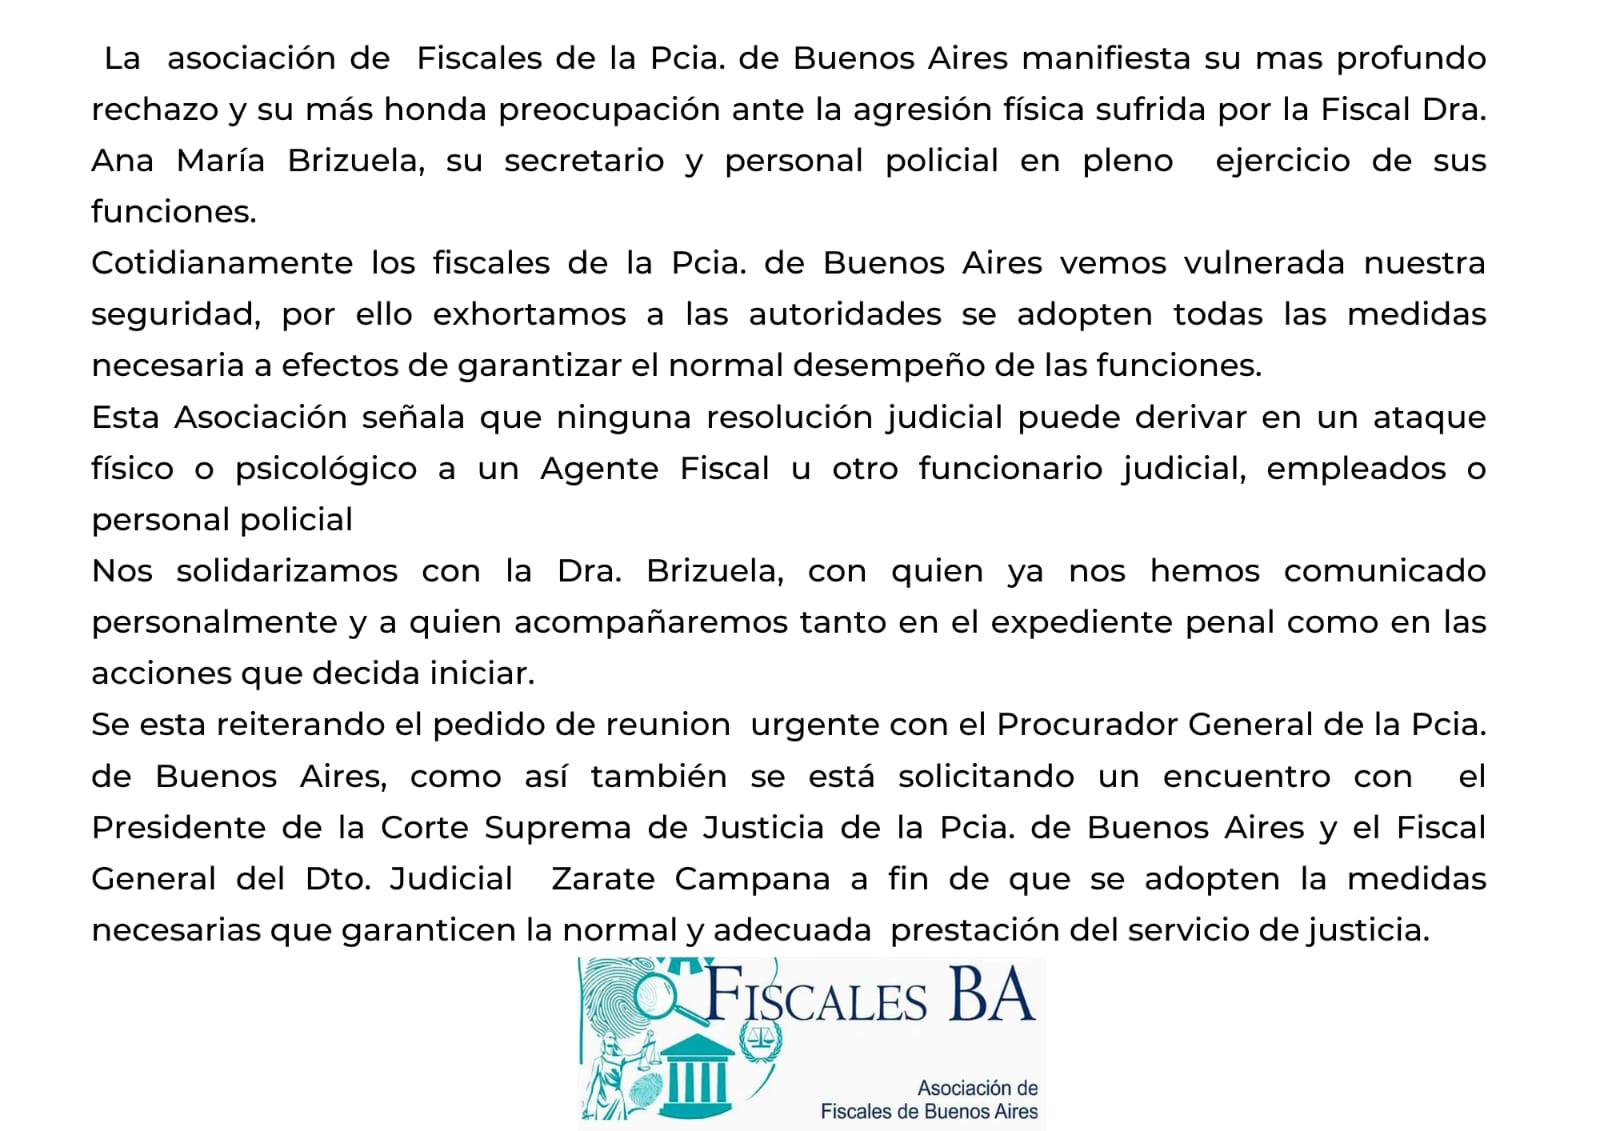 La Asociación de Fiscales de la Provincia de Buenos Aires solicitó una “reunión urgente” con el Procurador